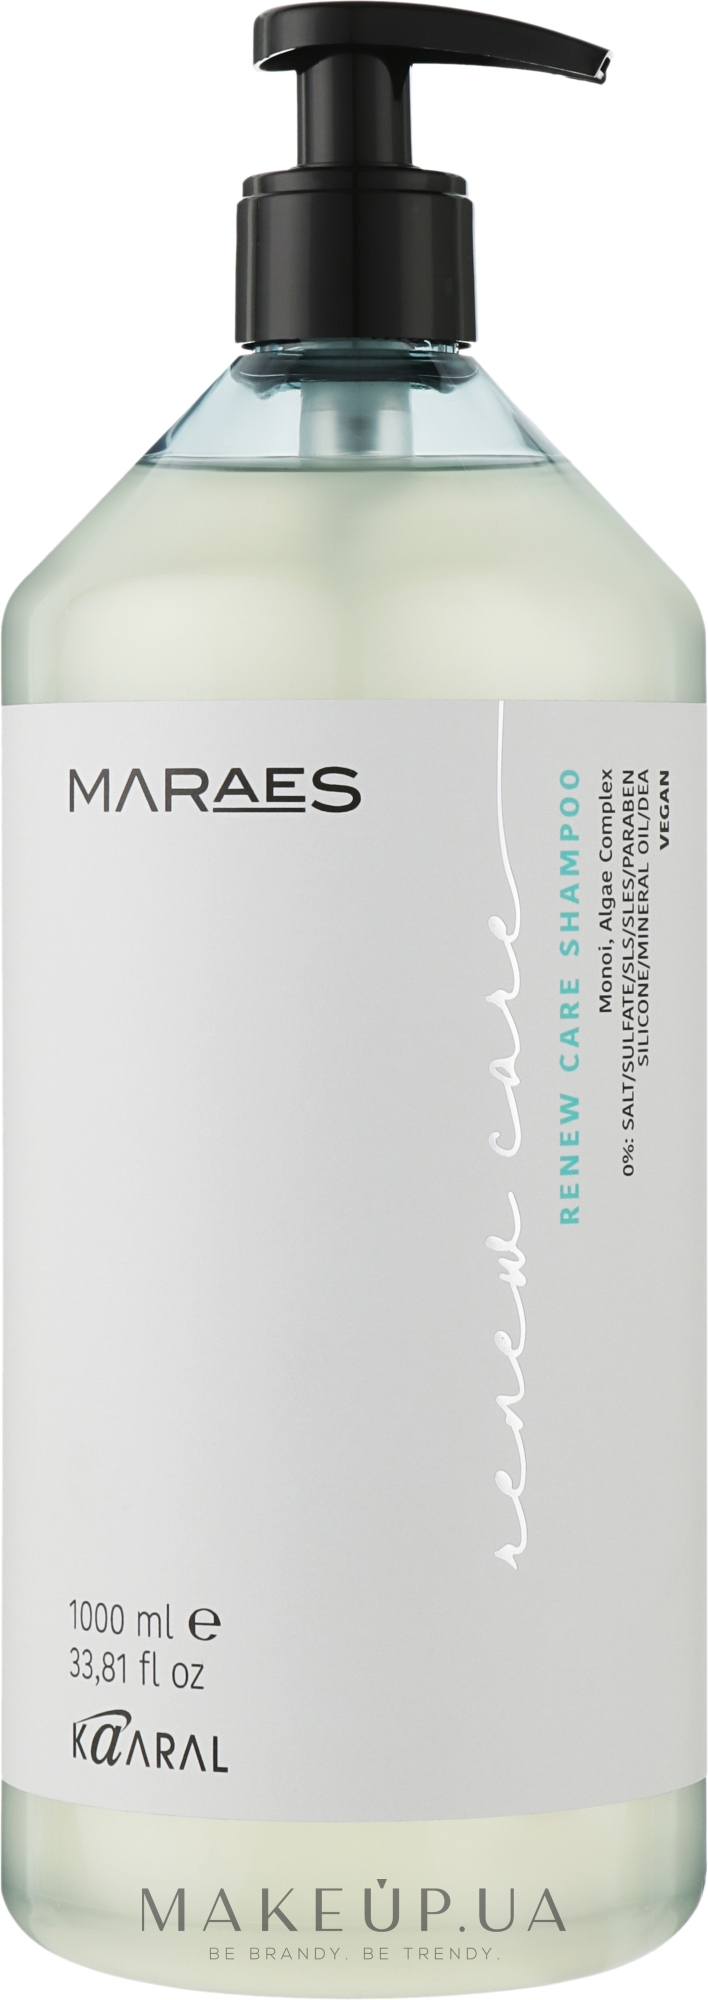 Шампунь для восстановления волос с комплексом водорослей - Kaaral Maraes Renew Care Shampoo — фото 1000ml